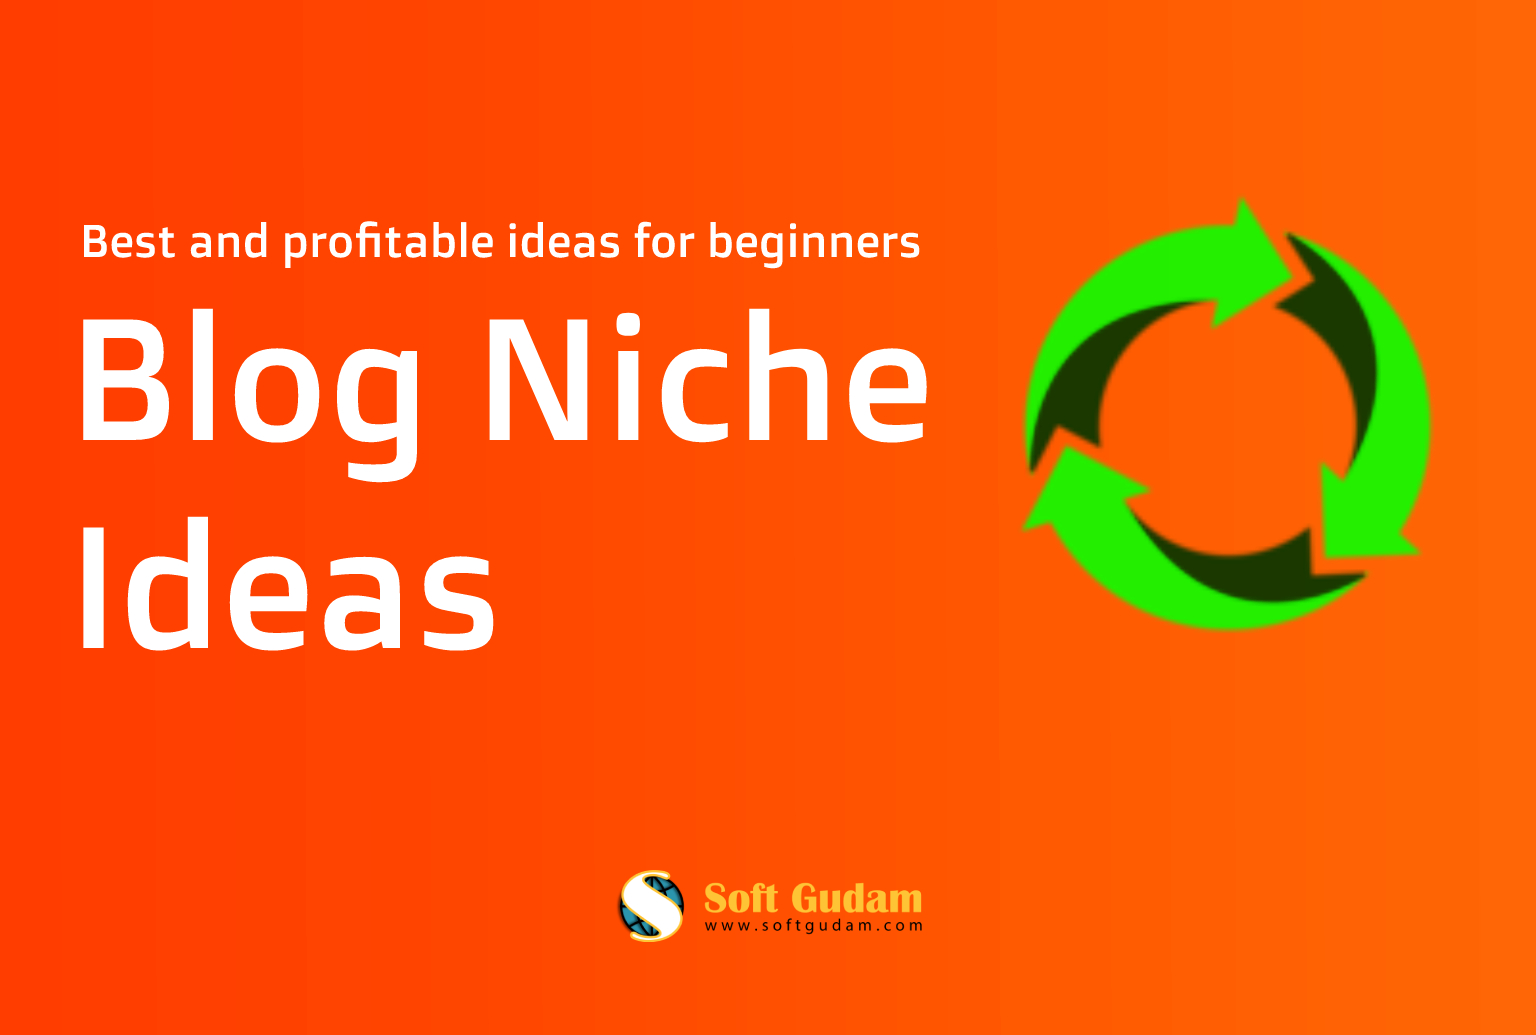 Blog Niche Ideas